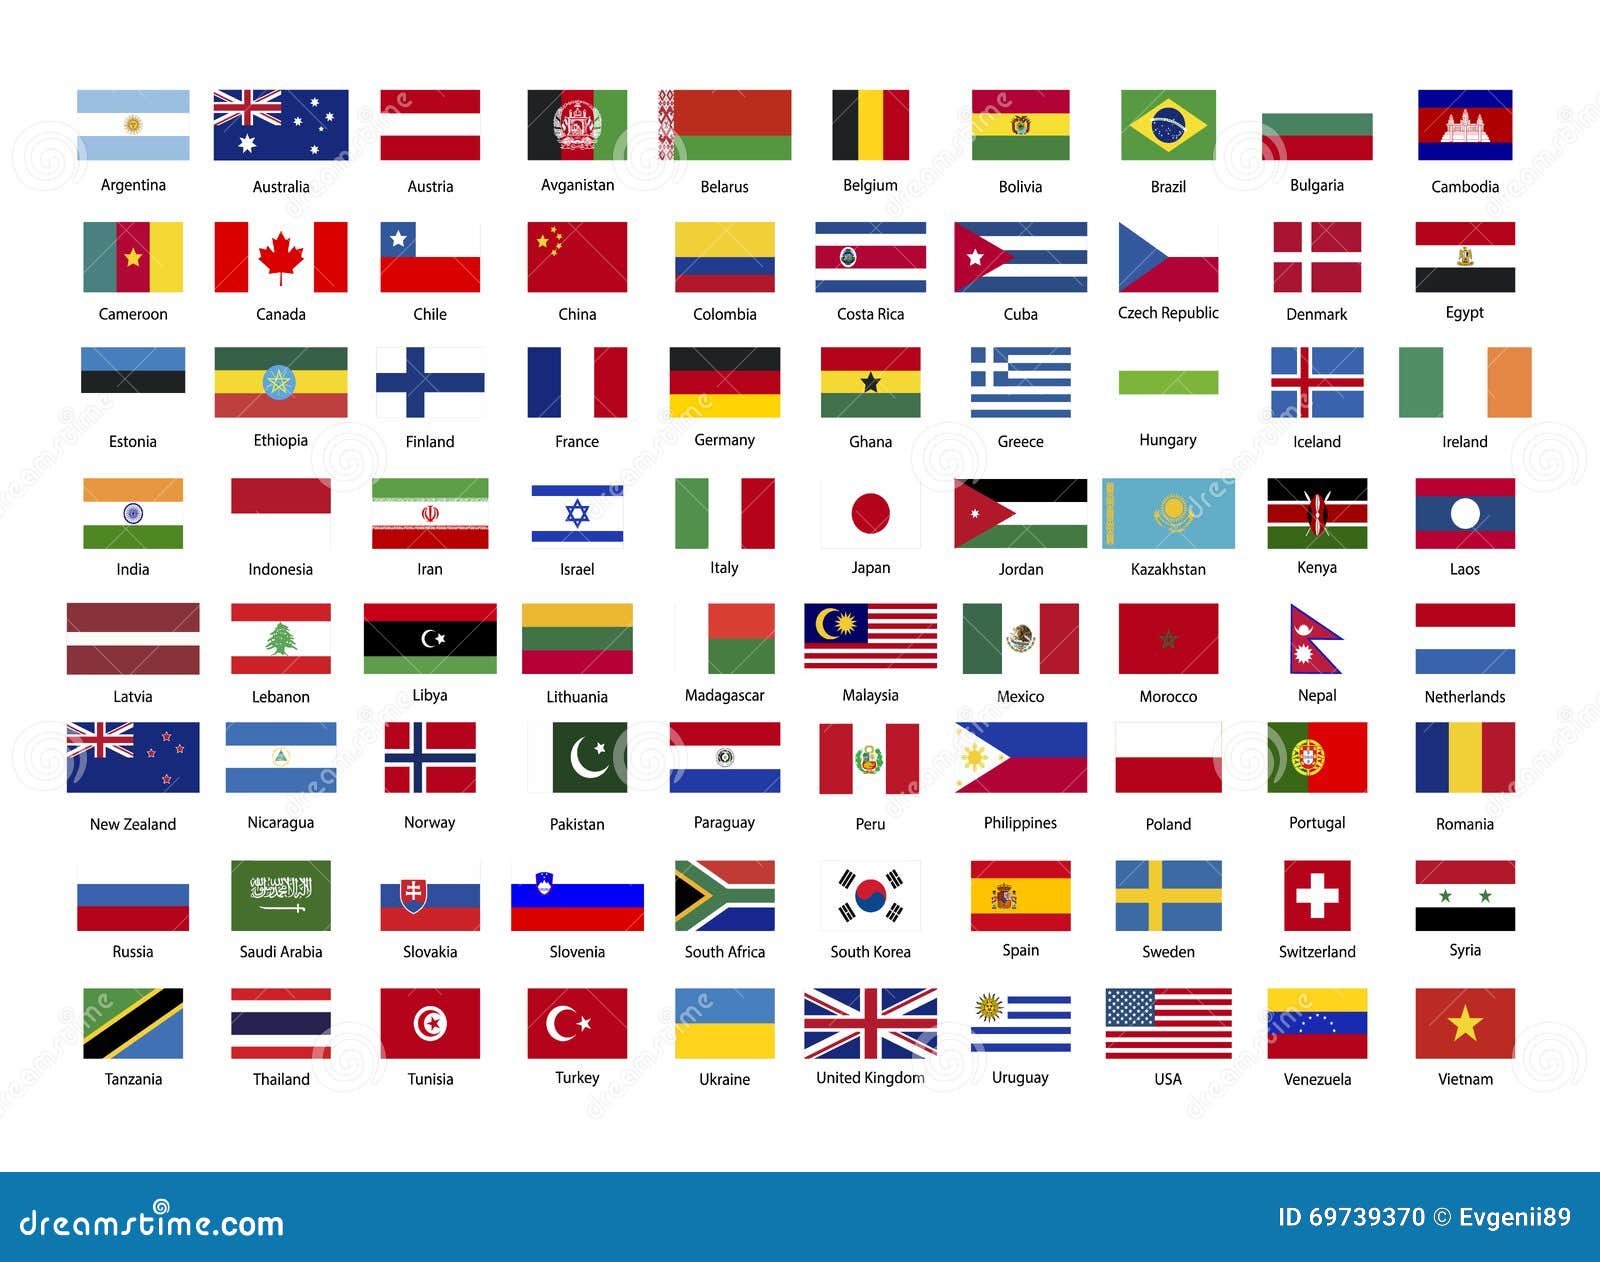 Как они называются. Все страны мира и их флаги и названия на русском языке. Флаги крупных государств. Крупные страны и их флаги. Флаги суверенных государств.